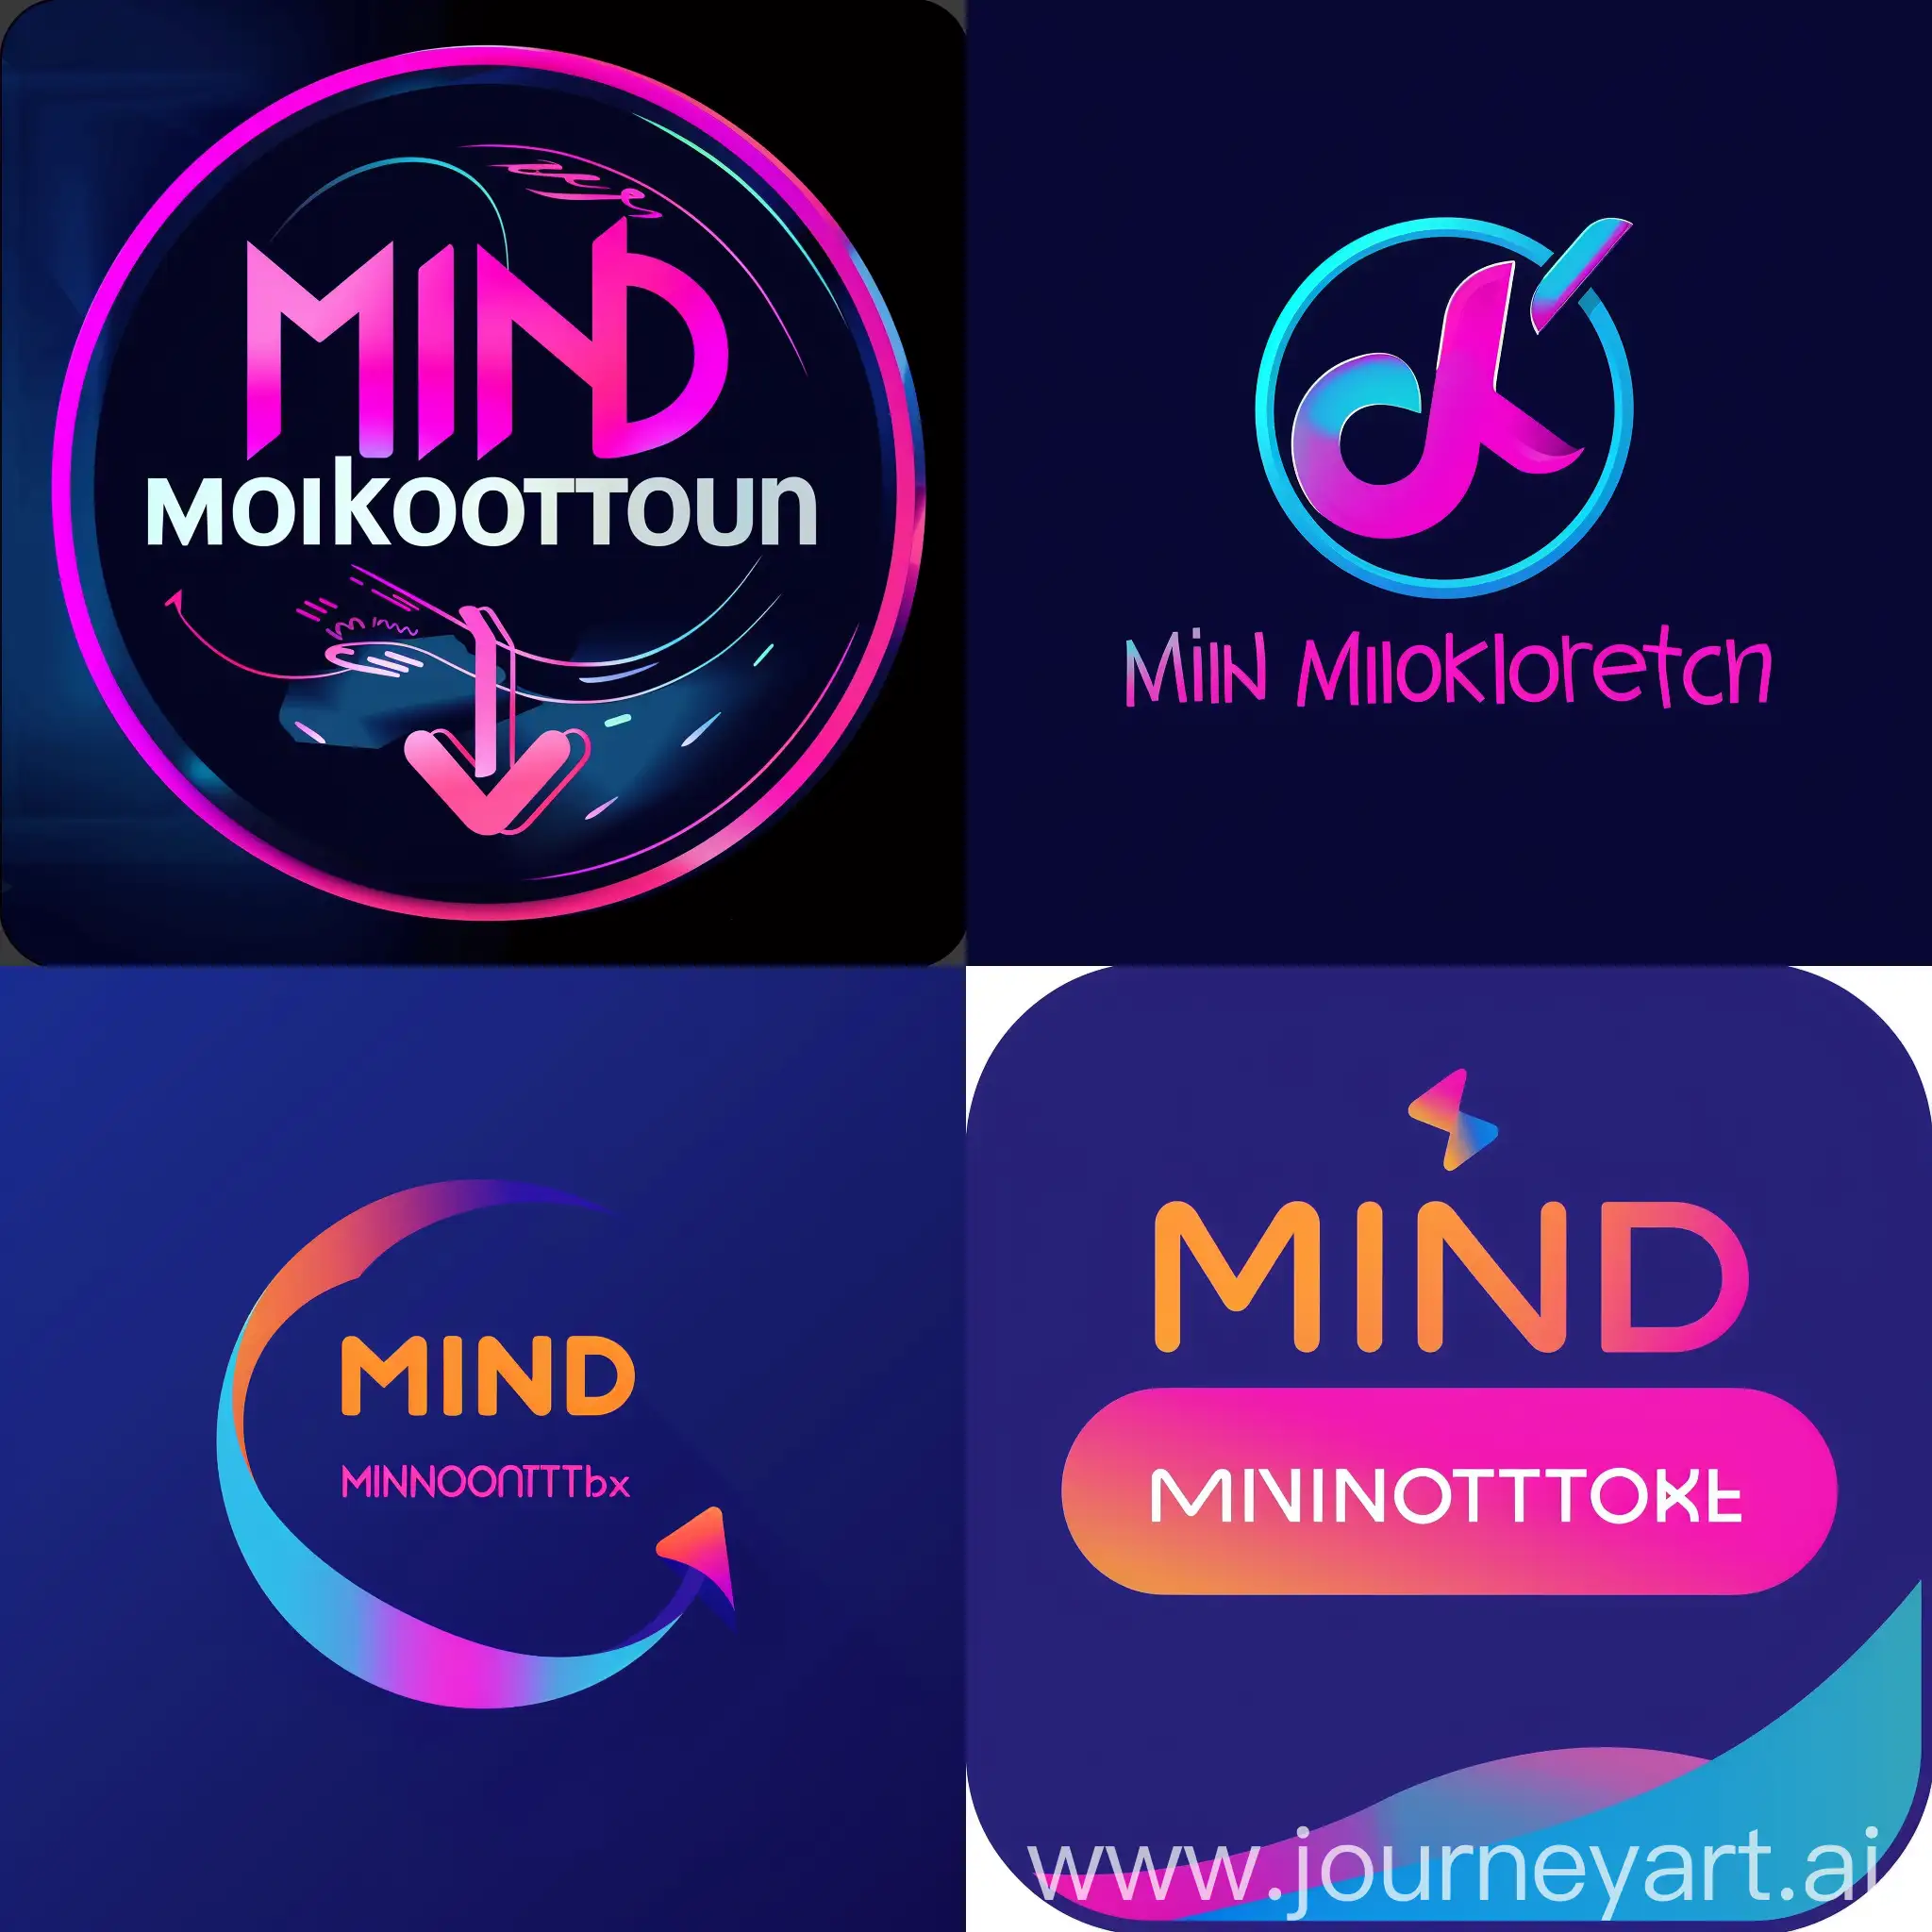 Une photo de profile tiktok avec marquer "Mind Motivation" ca doit etre un logotype professionnel